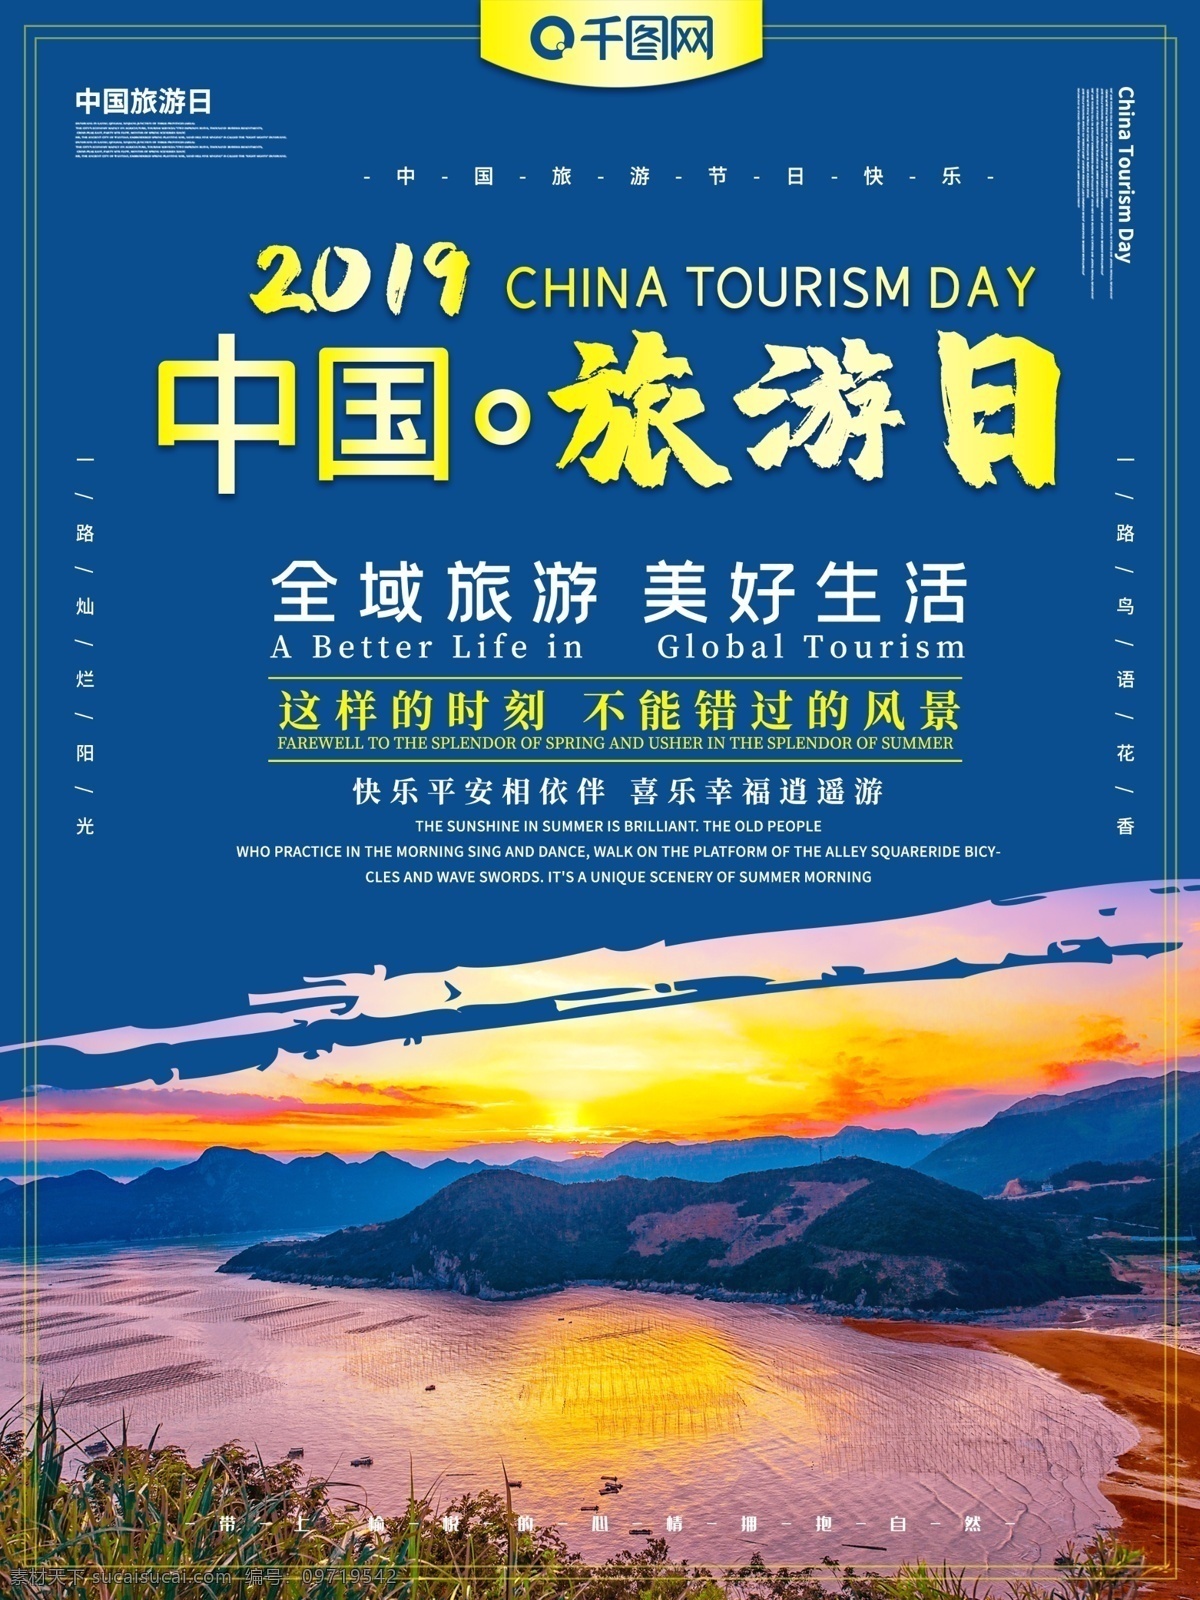 中国旅游 日 主题 海报 中国旅游日 旅游 旅行 美景 风景